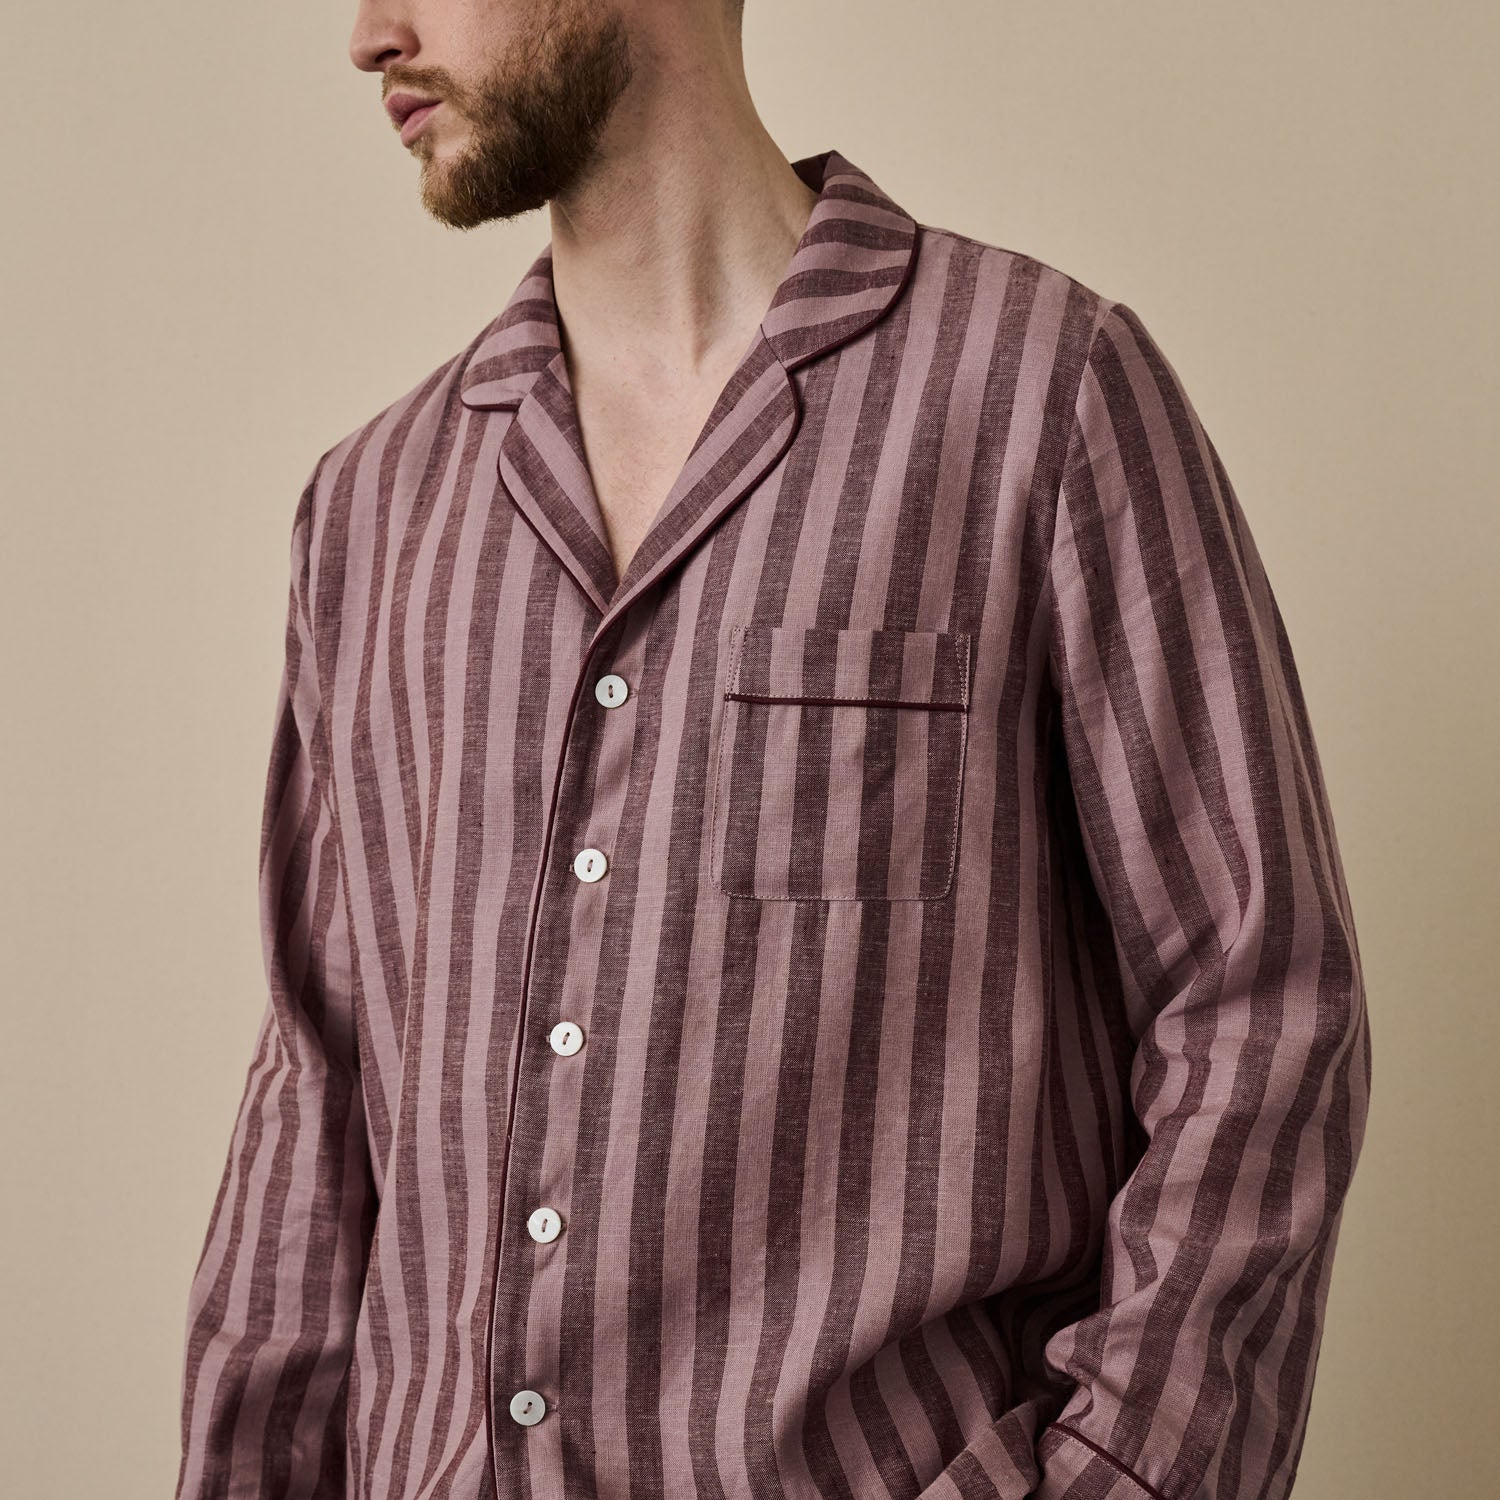 Port & Woodrose Striped Linen Men's PJ Shirt